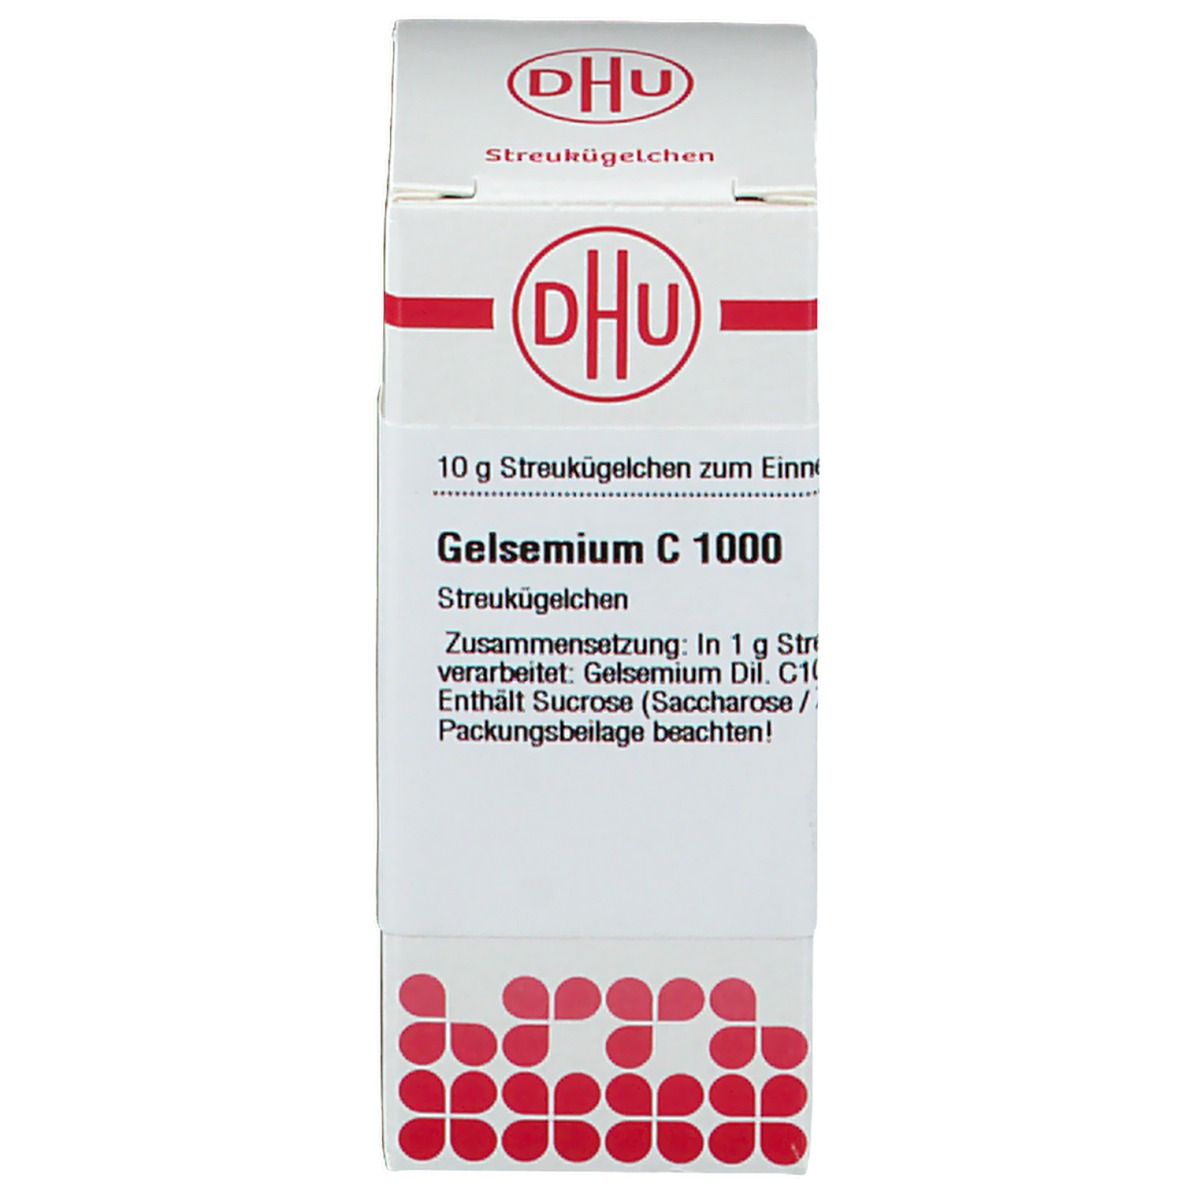 DHU Gelsemium C1000